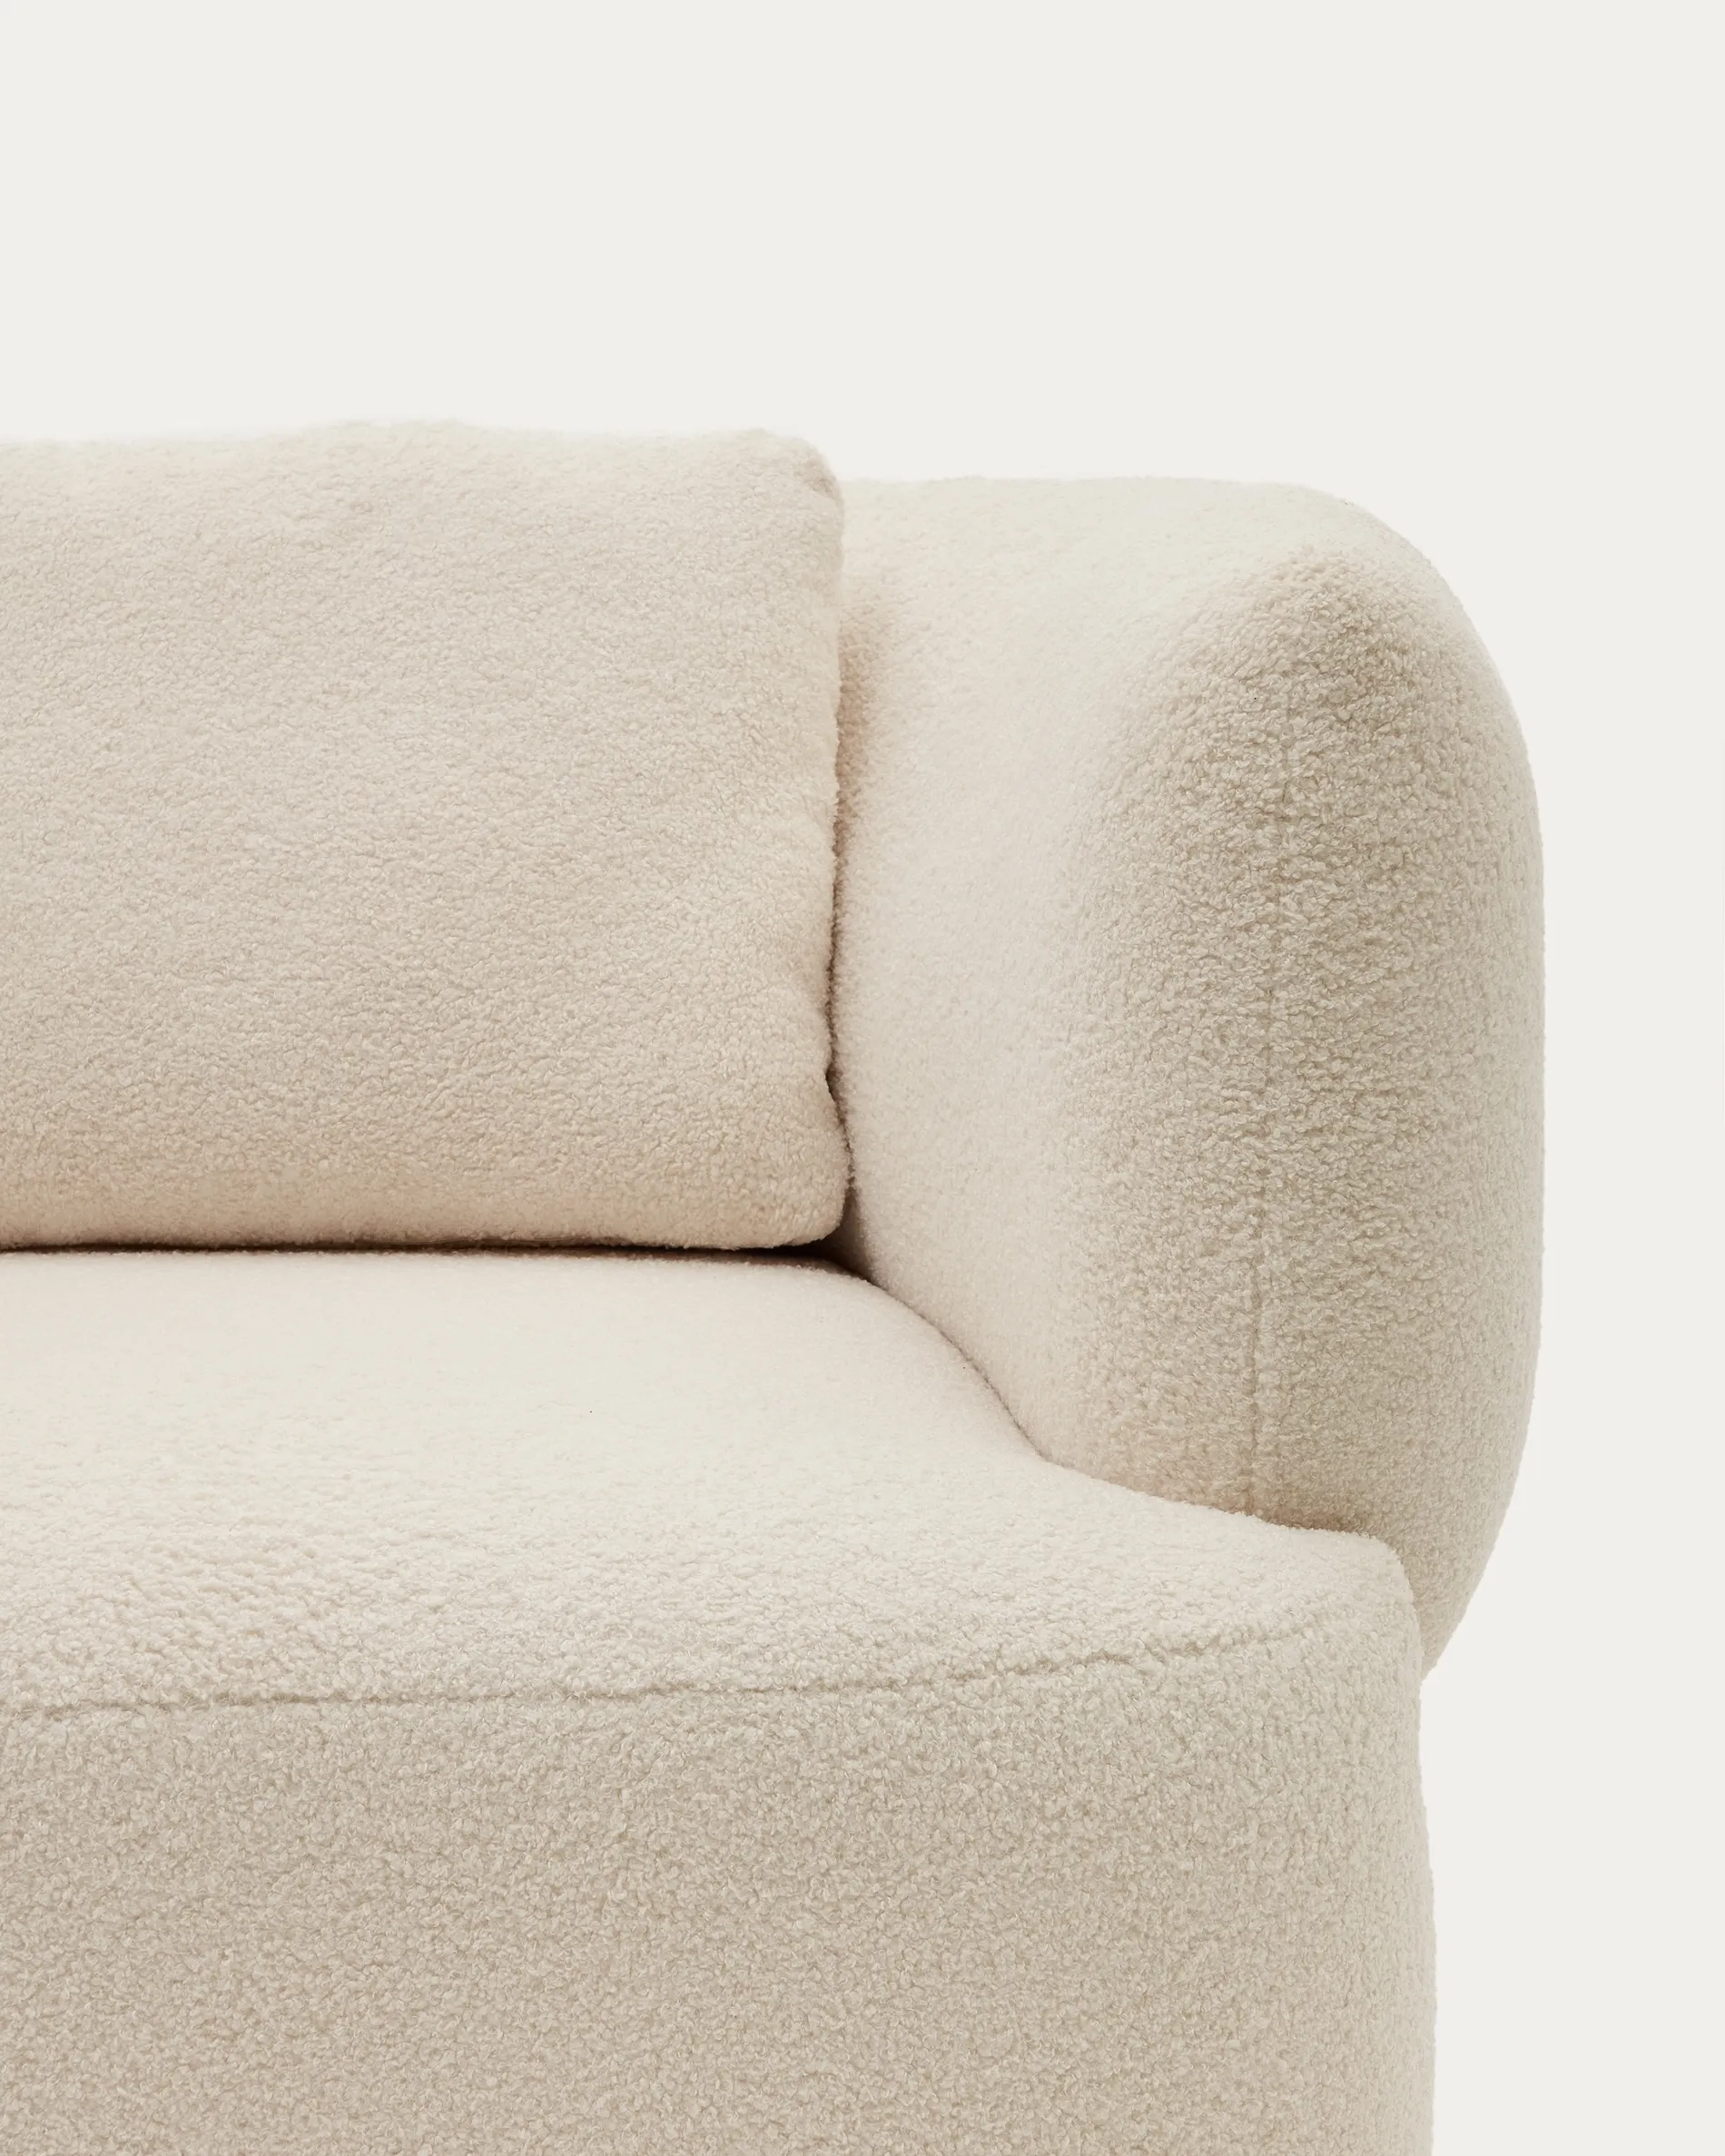 Поворотное кресло La Forma Martina букле белоснежное с подушкой 190127